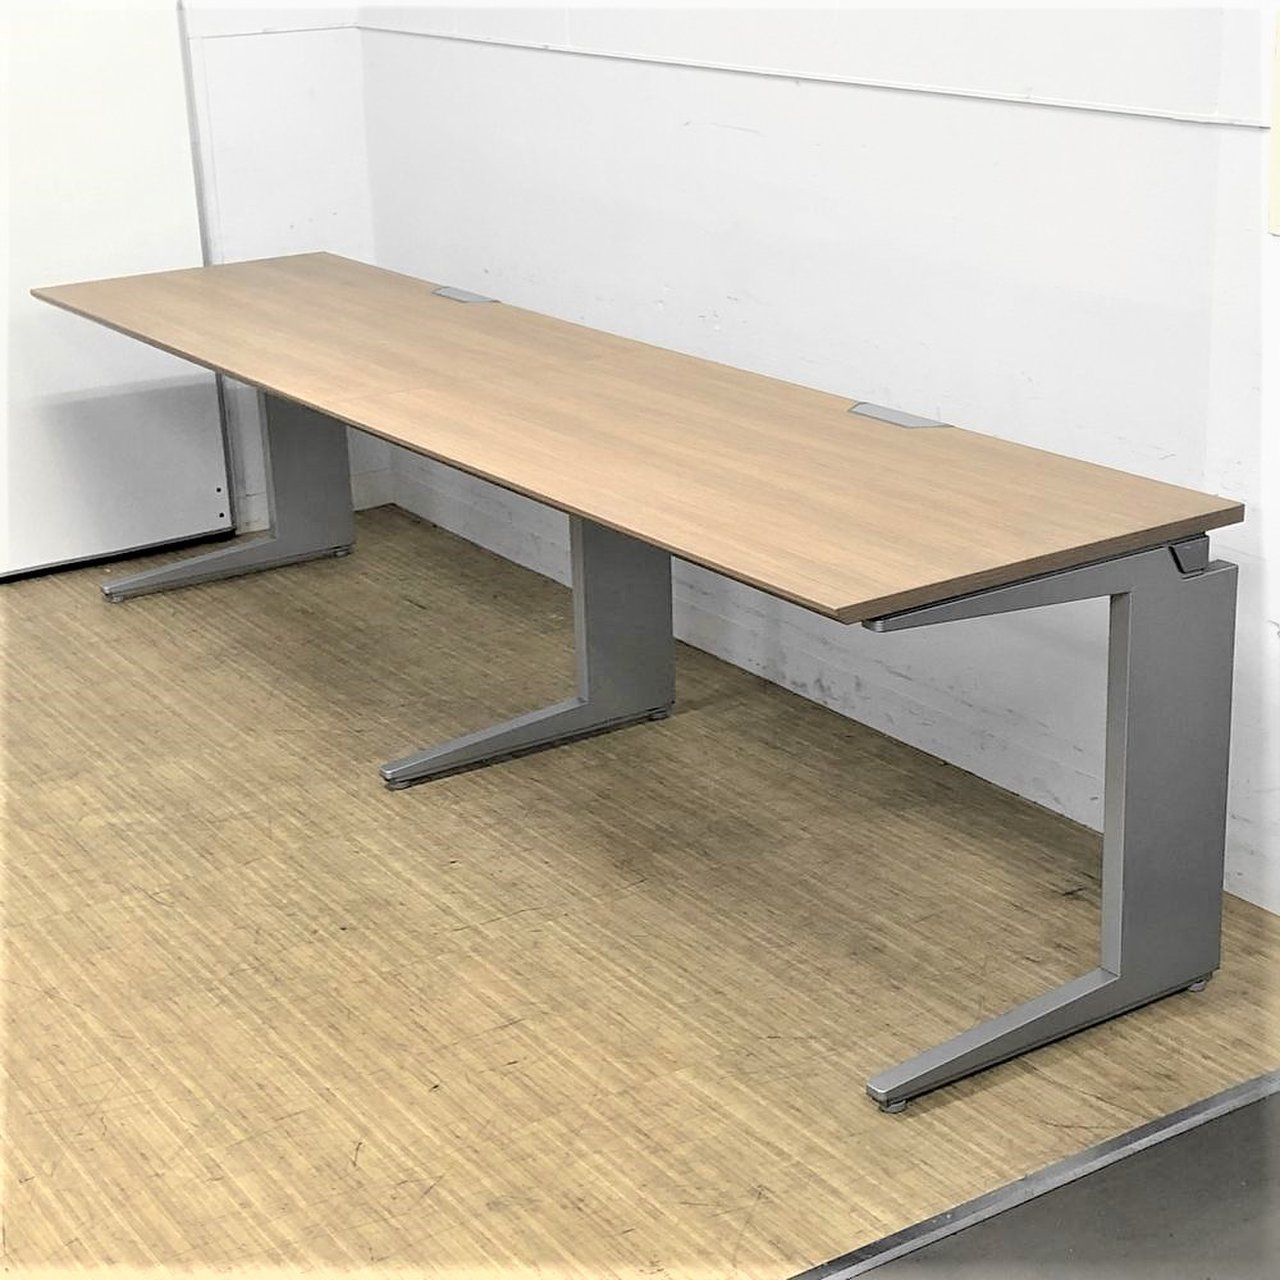 オカムラ8184型 会議用折りたたみテーブル - 大阪府の家具